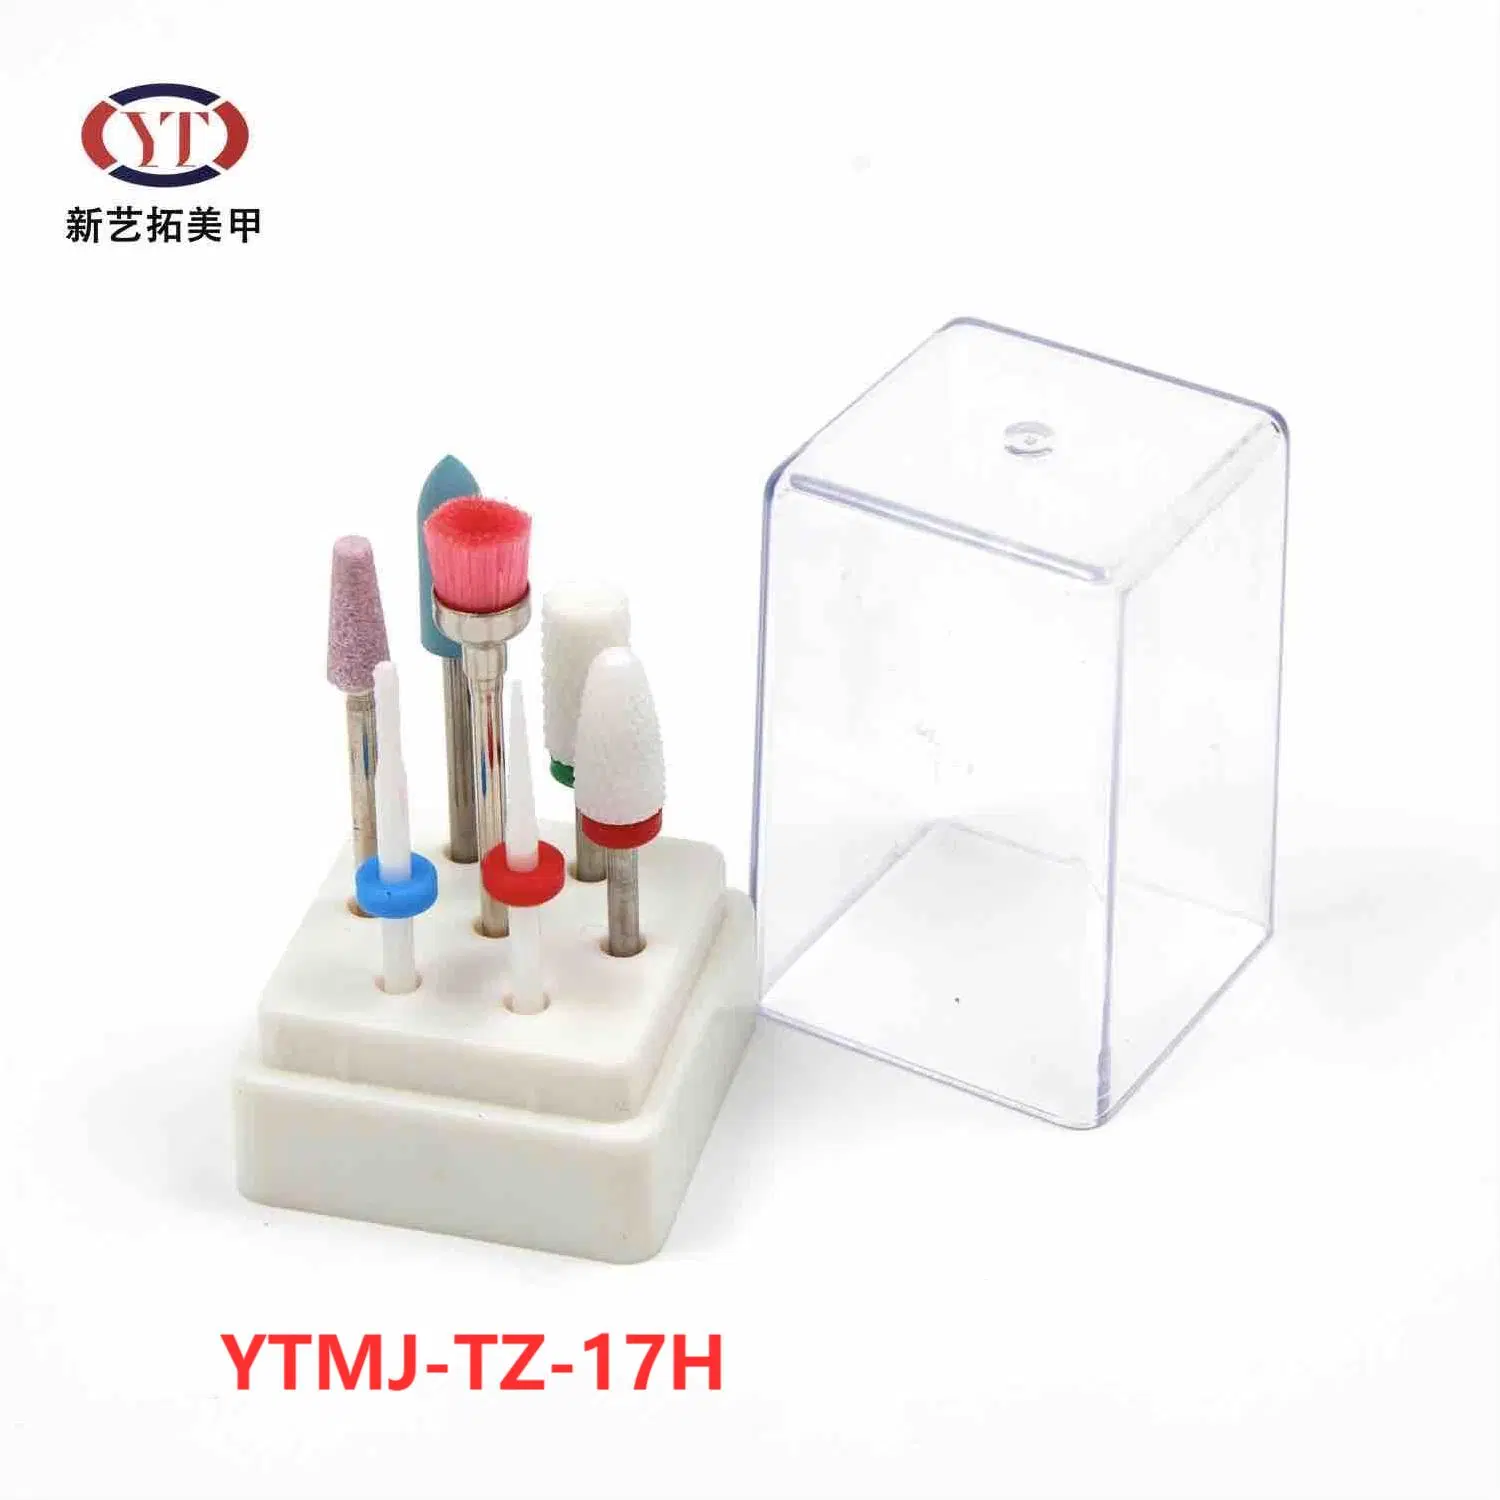 Ytmj-Tz-17h 7 ПК из карбида вольфрама керамические лак для ногтей коронок установить электрический маникюр педикюр заусенцы файл сверла бит шлифования